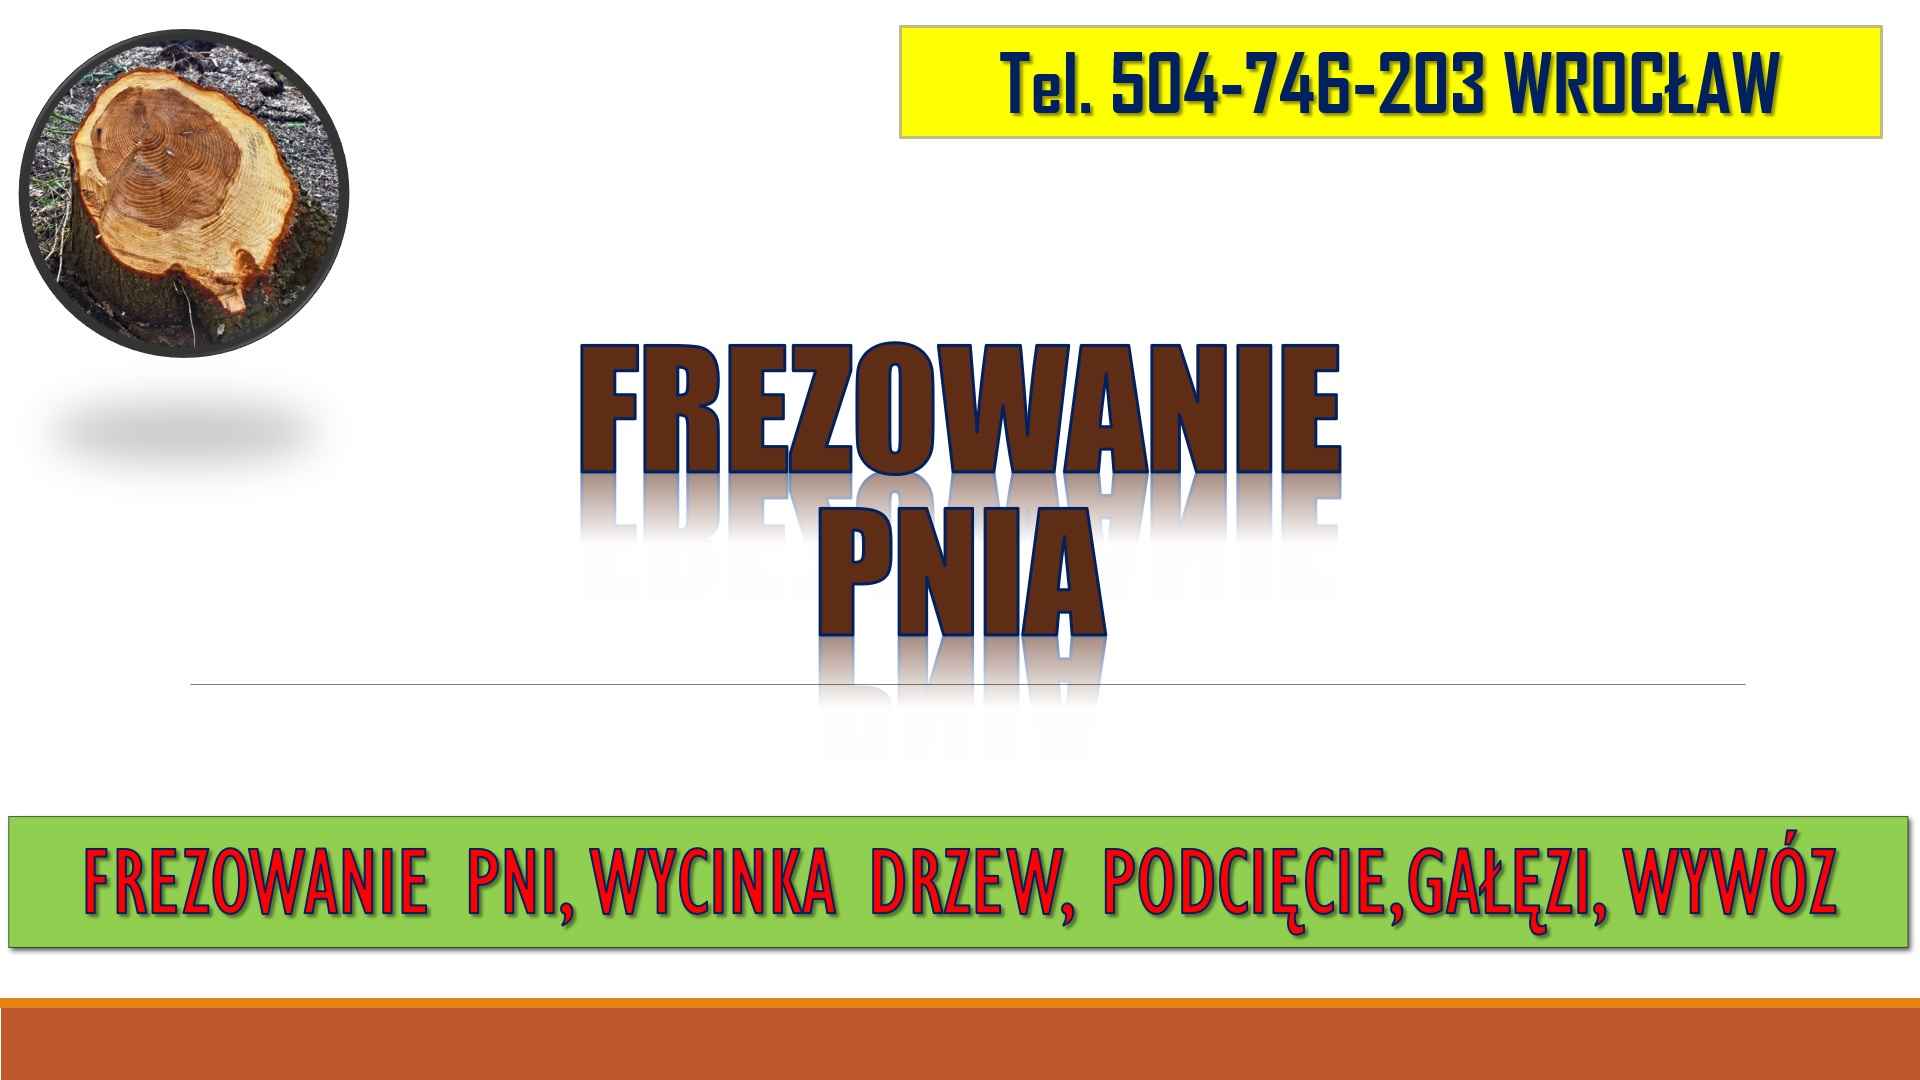 Frezowanie pni, cena, tel. 504-746-203, Wrocław, usuwanie pnia. Psie Pole - zdjęcie 2